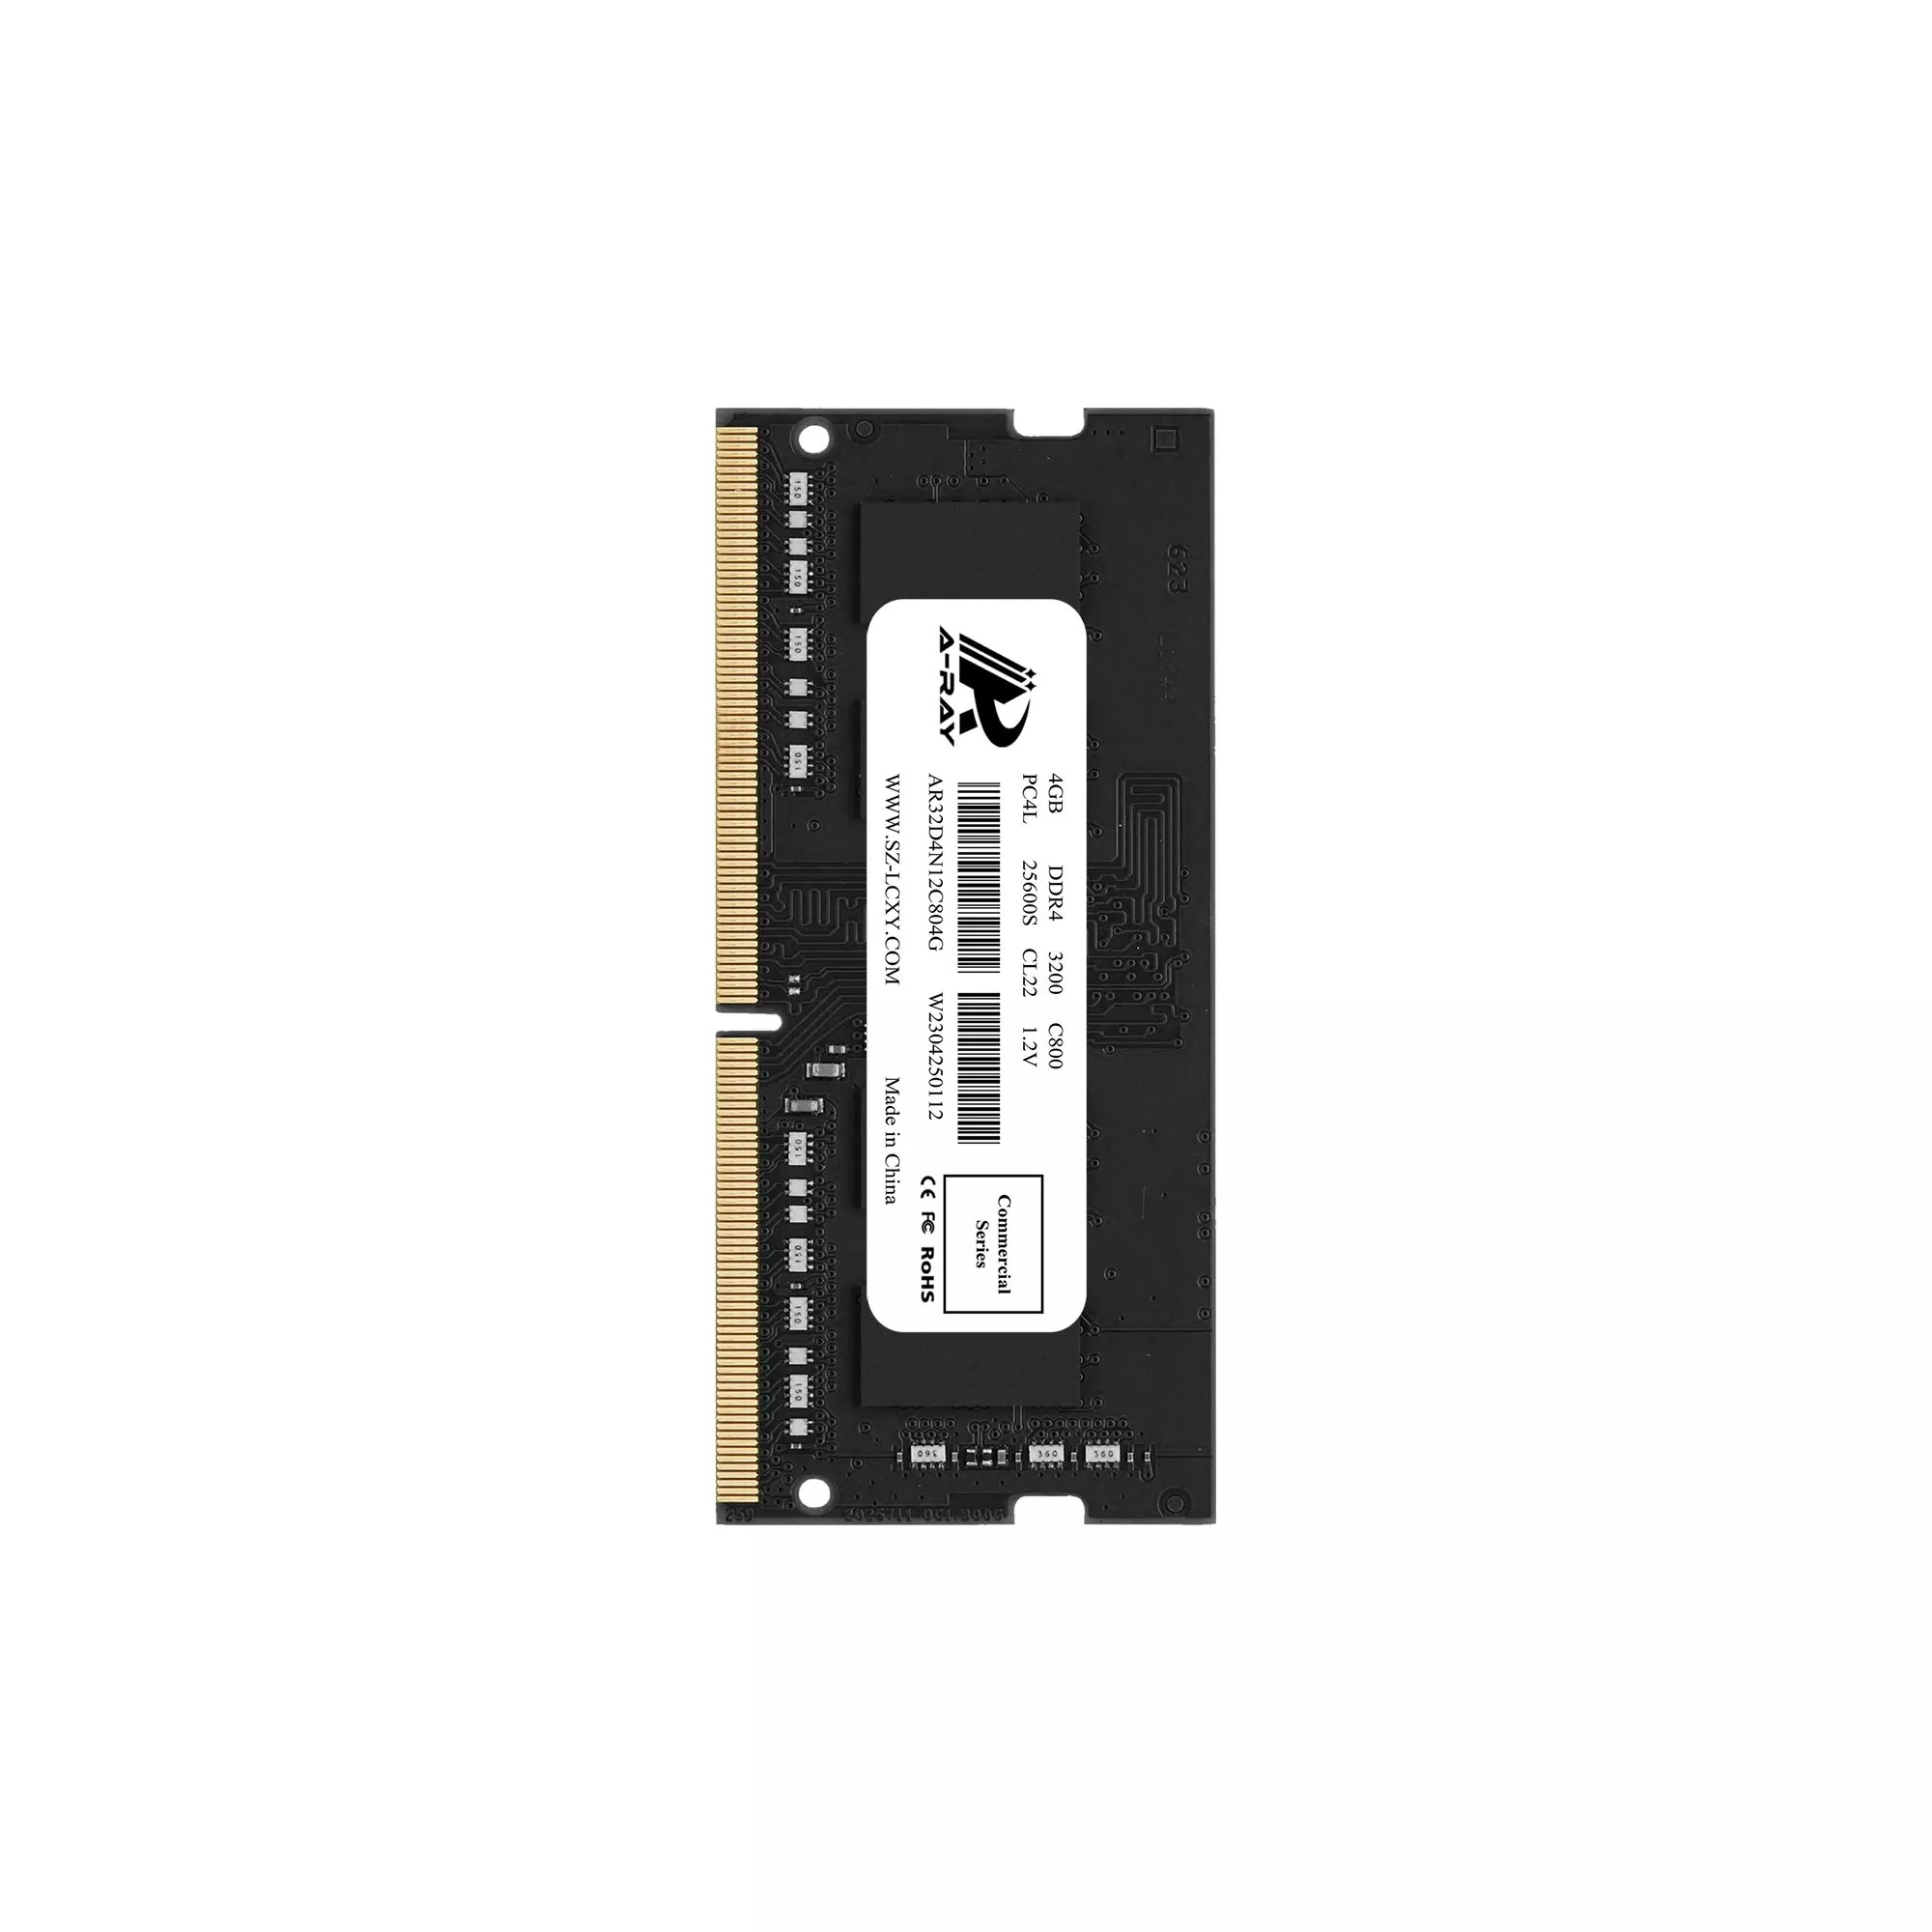 Bộ nhớ trong Ram A-Ray 4GB DDR4 Bus 3200 Mhz Laptop C800 25600 MB/s P/N: AR32D4N12C804G